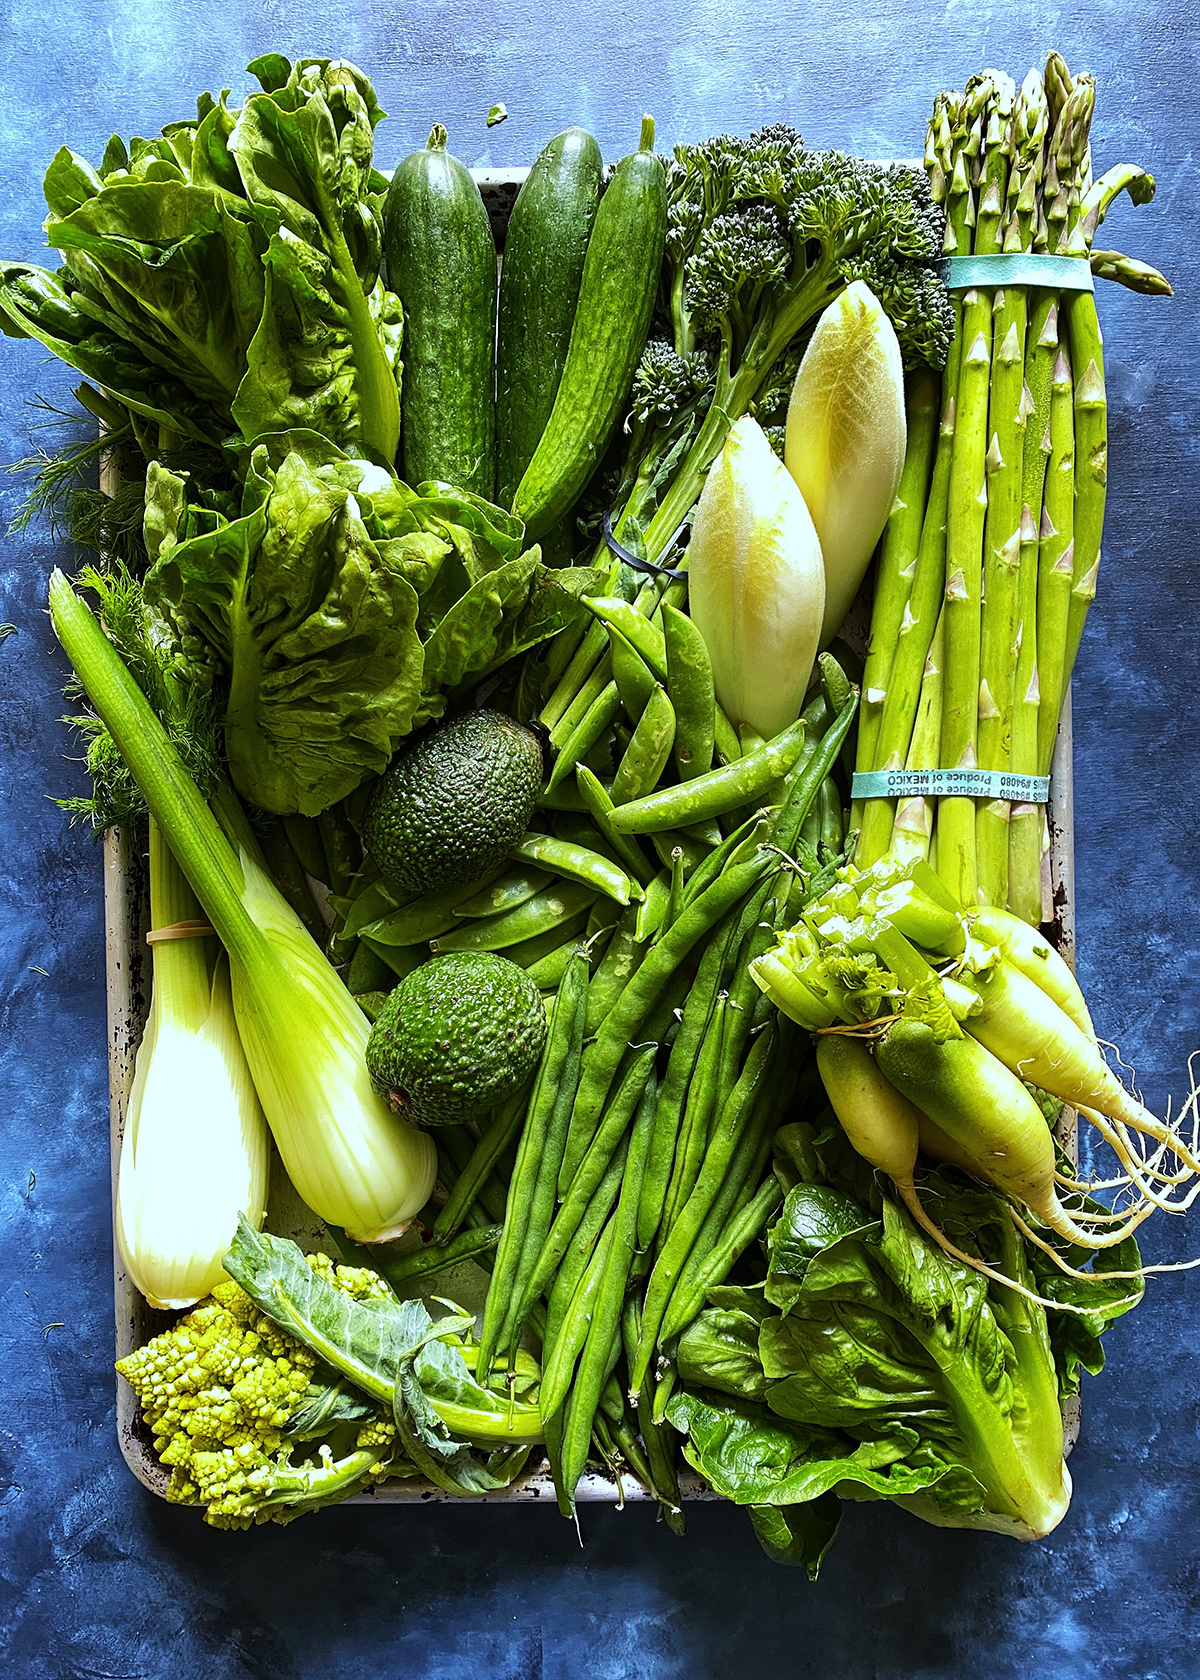 green vegetables market haul for green goddess